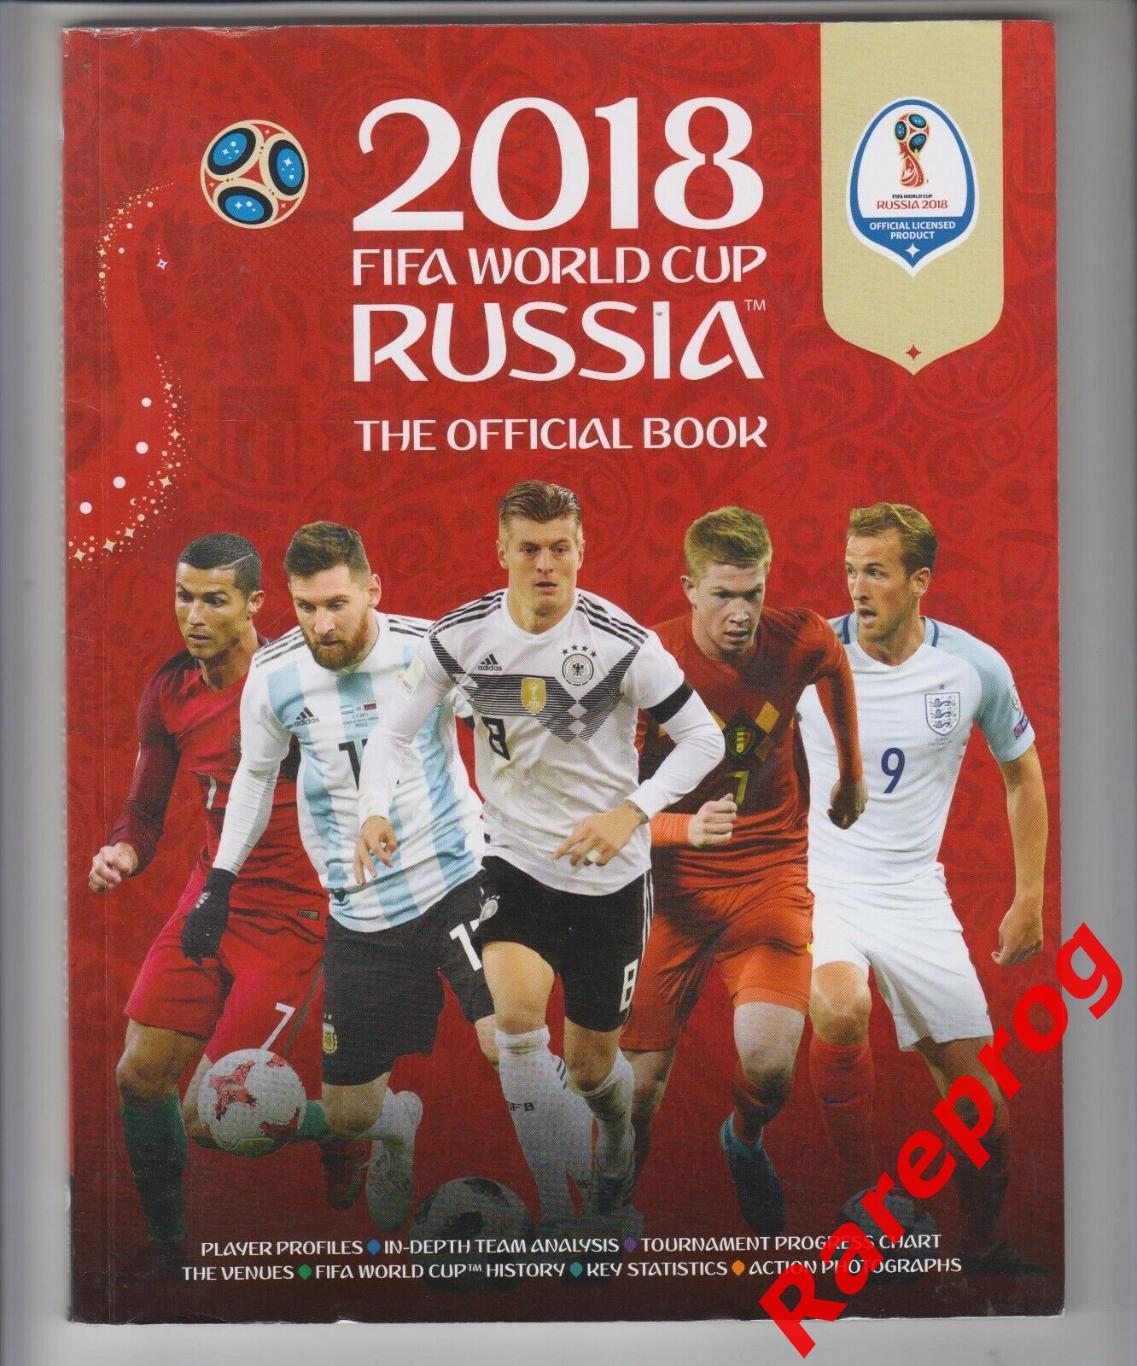 английский язык - официальная программа ФИФА - Чемпионат Мира 2018 Россия